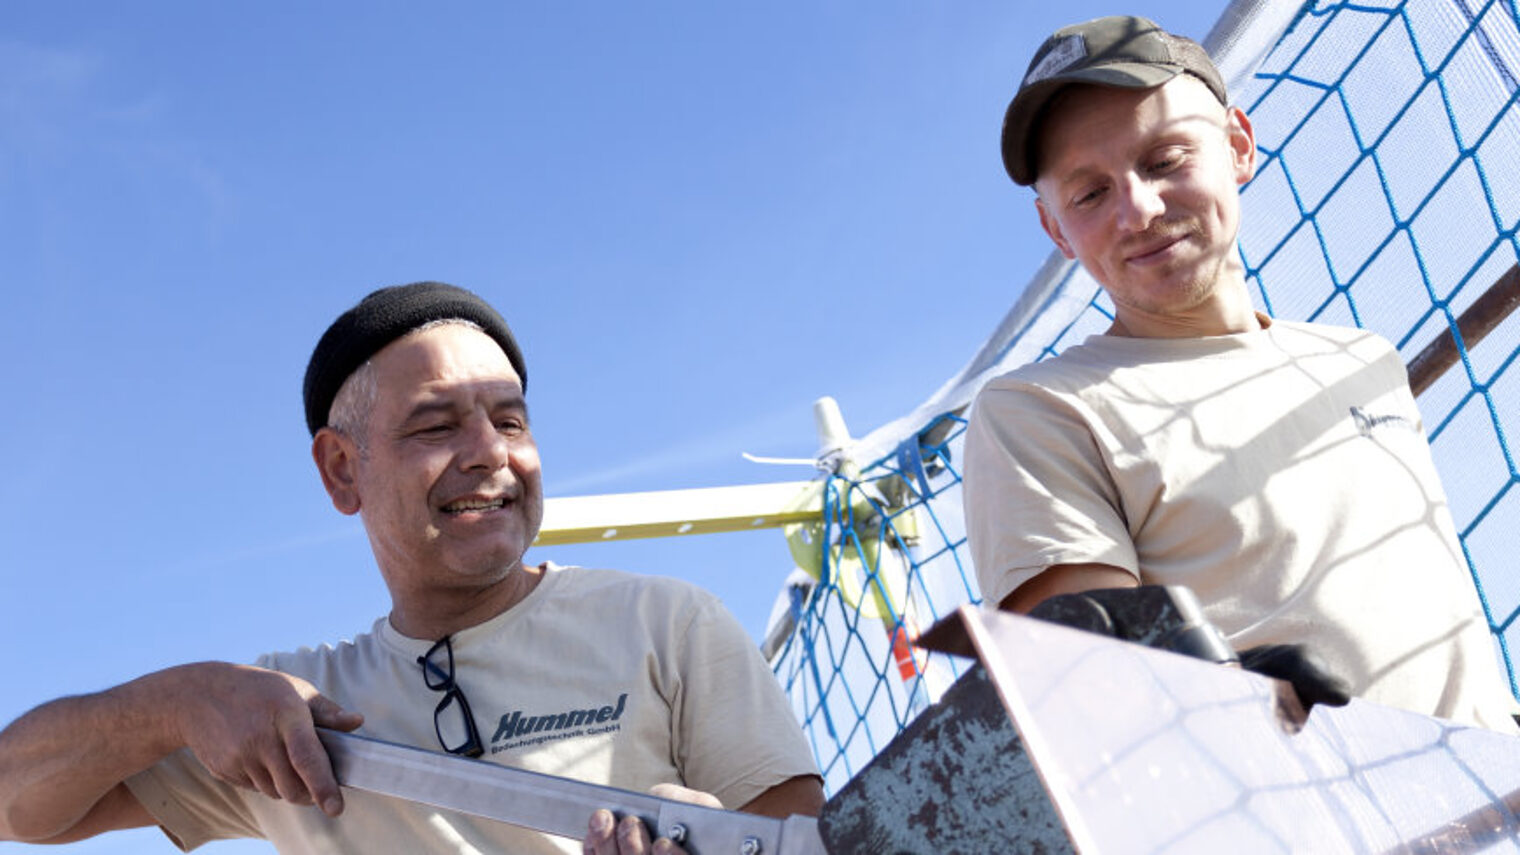 Zwei Männer stehen vor einem Schutznetz und bearbeiten ein Blech.